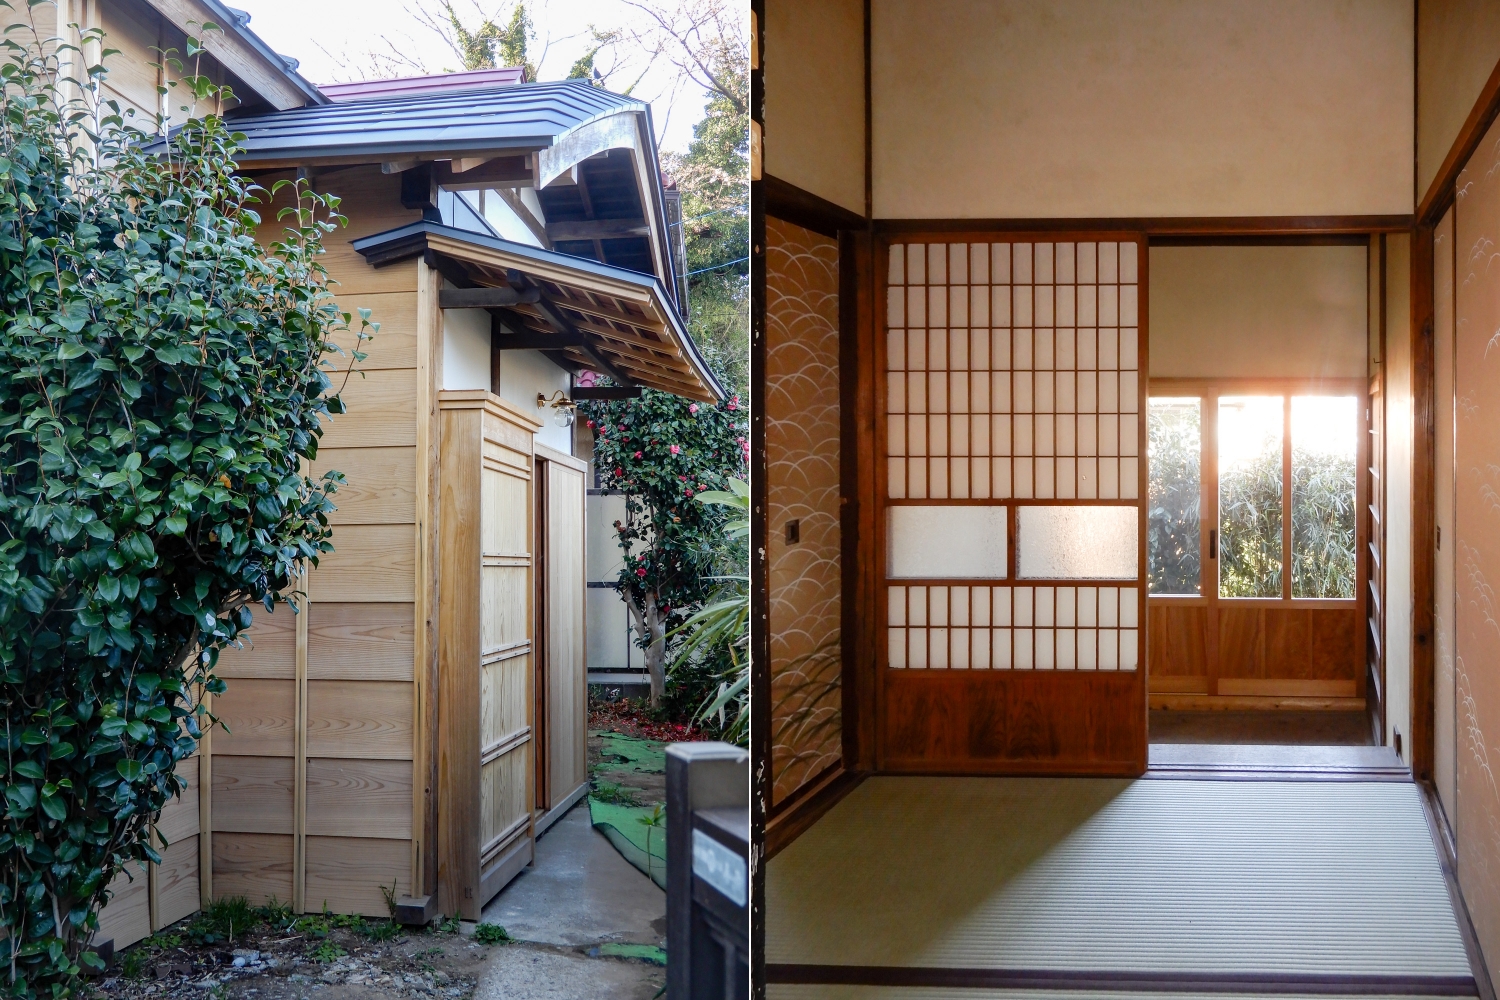 左：NPO法人 日本民家再生協会の「民家再生奨励賞」を受賞。外壁は洋間を除いて日本下見張り （にほんしたみばり）。雨仕舞がよく木材が腐りにくいので長持ちする日本に古くからある工法。 右：玄関を上がると次の間。お客様をお迎えする二畳の部屋で、ゆとりを感じさせてくれます。